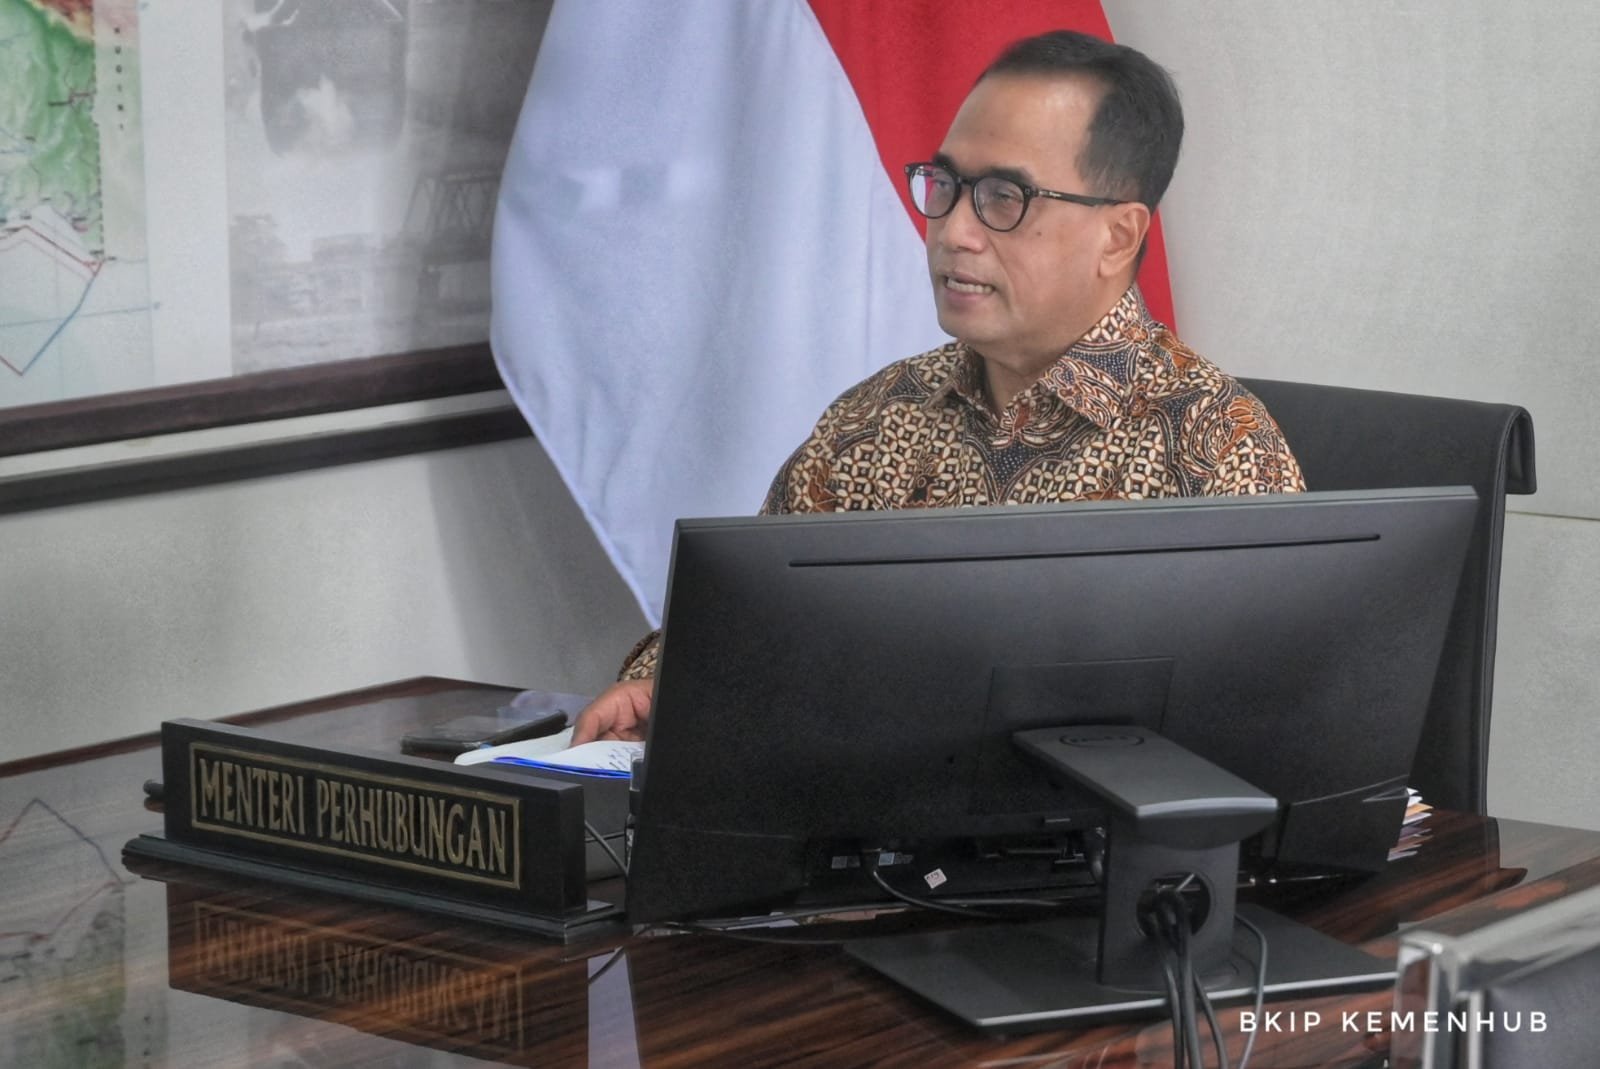 Rangkaian Kereta Cepat Jakarta - Bandung Mulai Dikirim Ke Indonesia